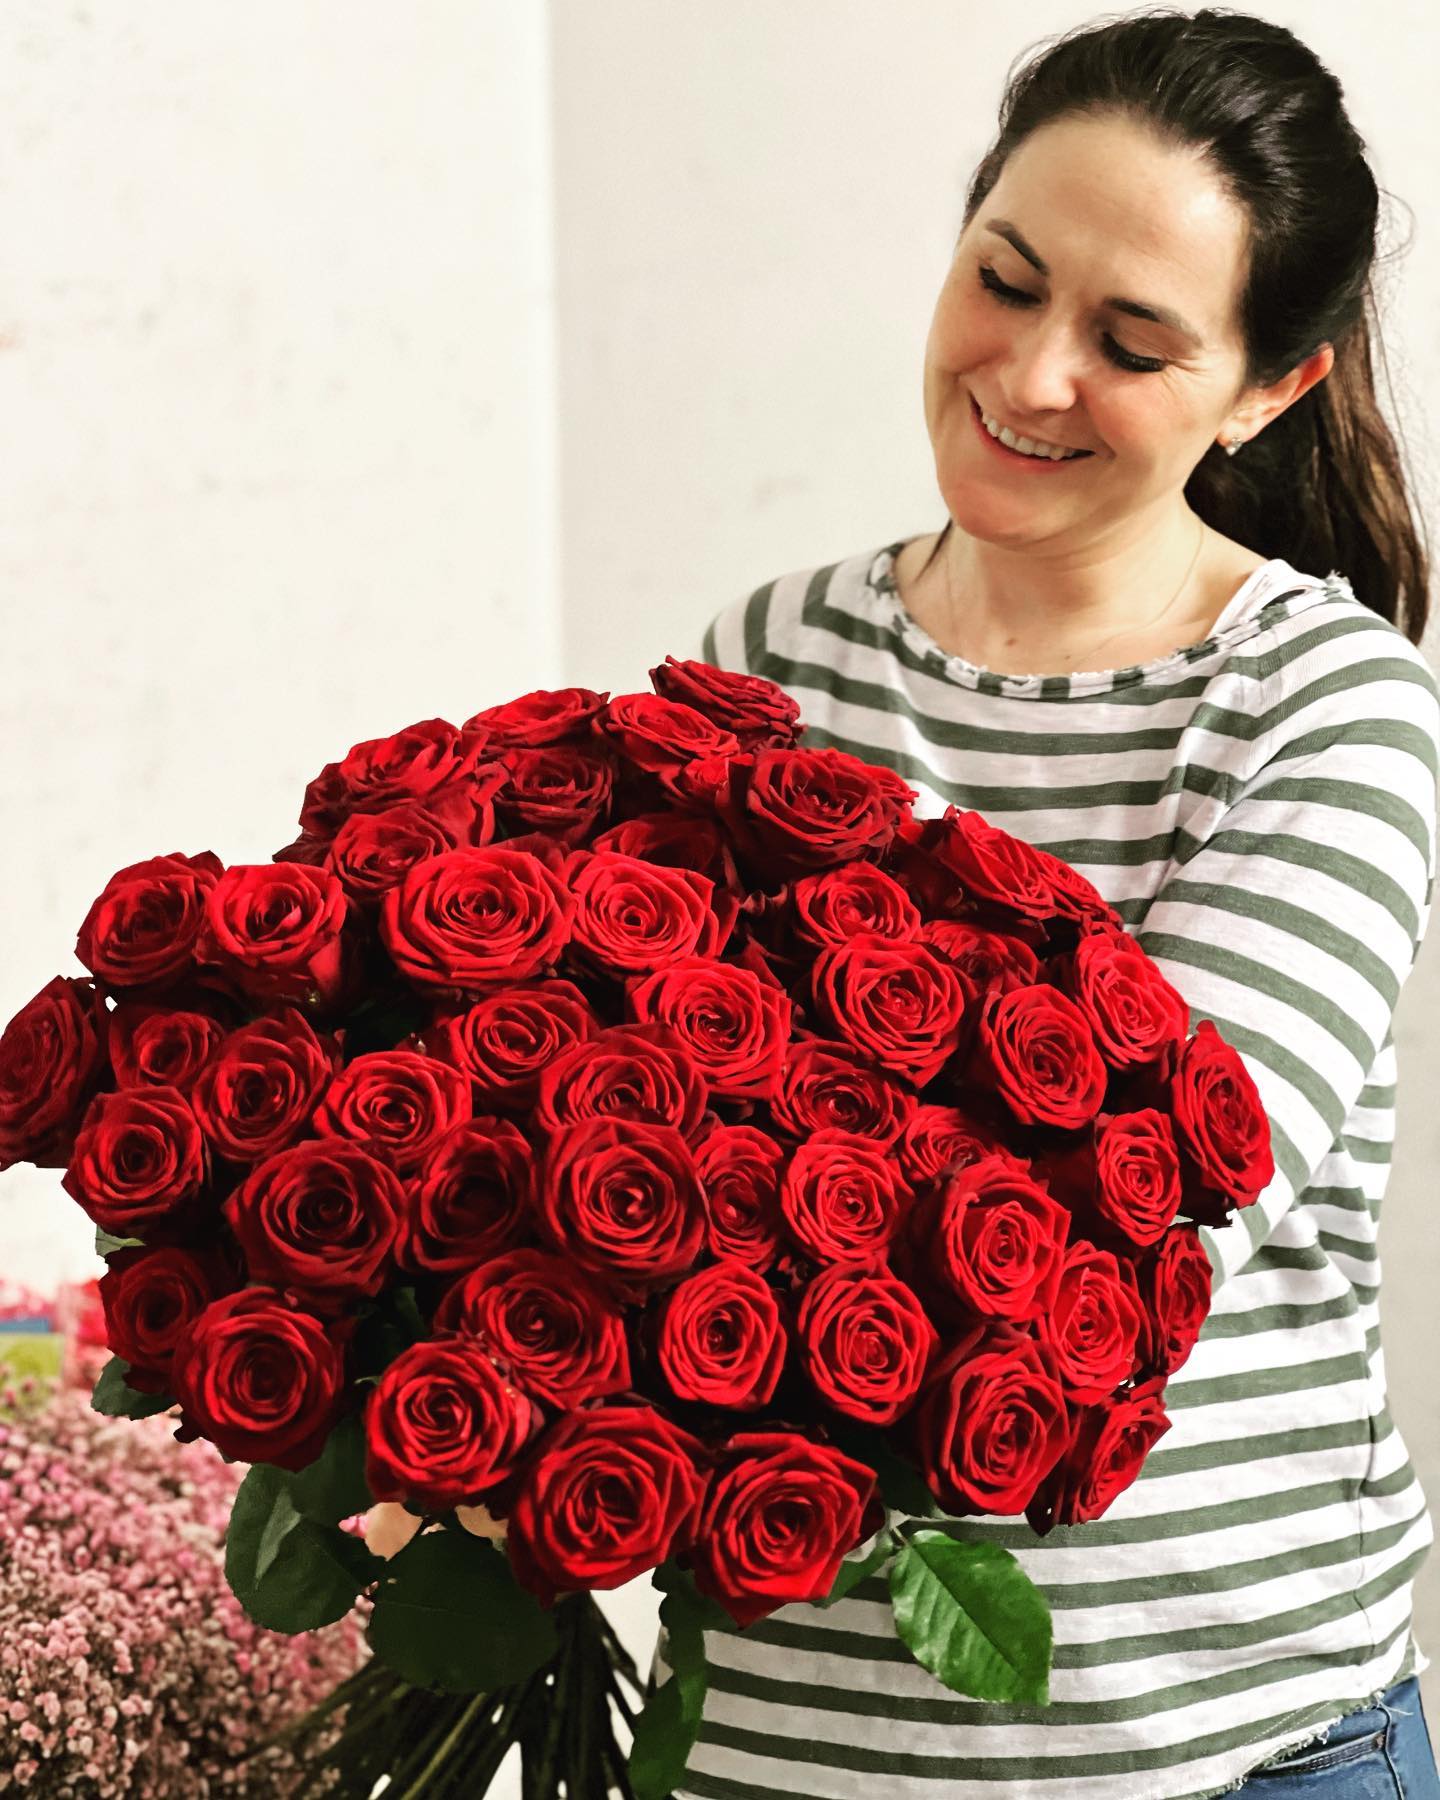 Für heute Feierabend , doch der Countdown läuft!!! Morgen ist MUTTERTAG❤️ und wir freuen uns Euch dabei zu unterstützen wie die Herzen aller lieben Mütter höher schlagen! Sag DANKE mit wunderschönen Blumen @casadeifiorinbg Öffnungszeiten: 8:00-20:00 Uhr  #motherday #motherdaygift #flowersofmotherday #loveformymom #flowers #flowershop #flowerstagram #flowerpower #happyday #redroses #gift #giftideas #giftformom #soproudofyou #bestmom #forever